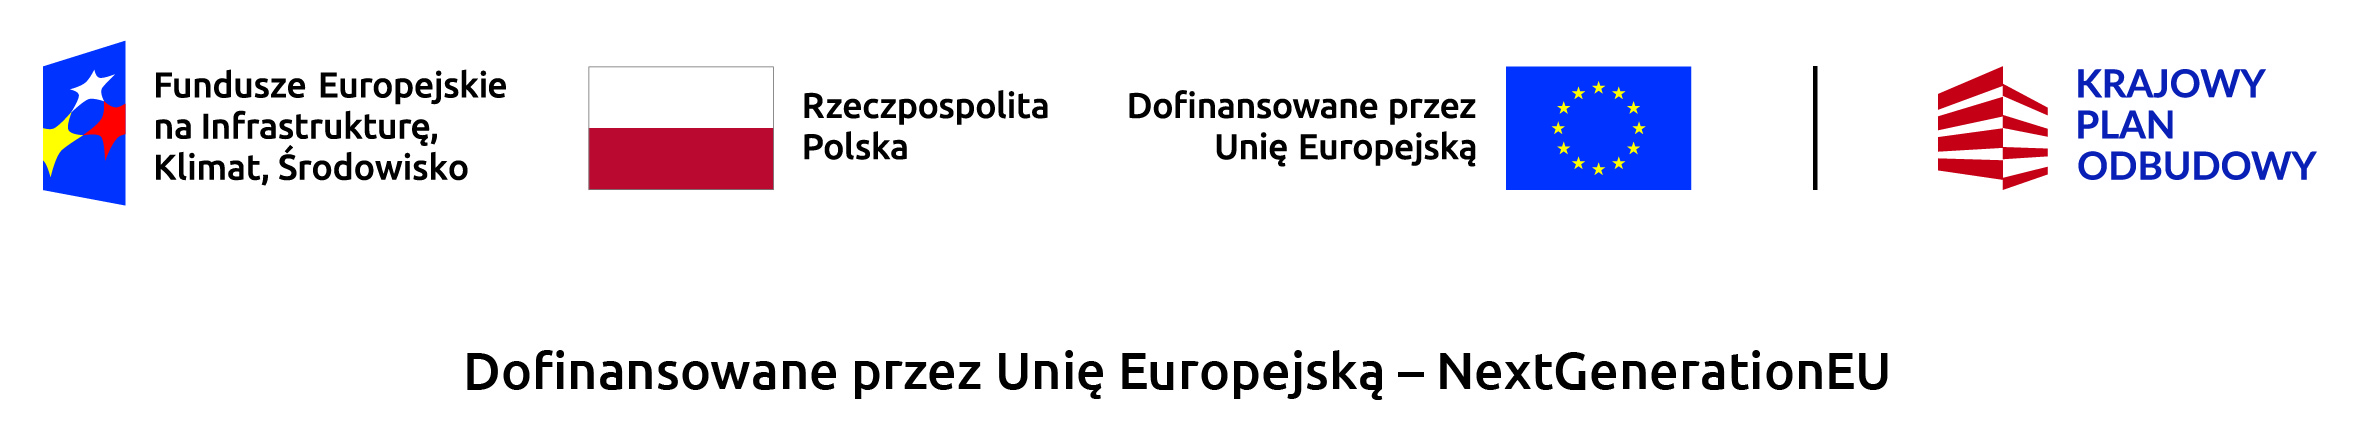 Logotypy dotyczące Czystego Powietrza i Funduszy Europejskich